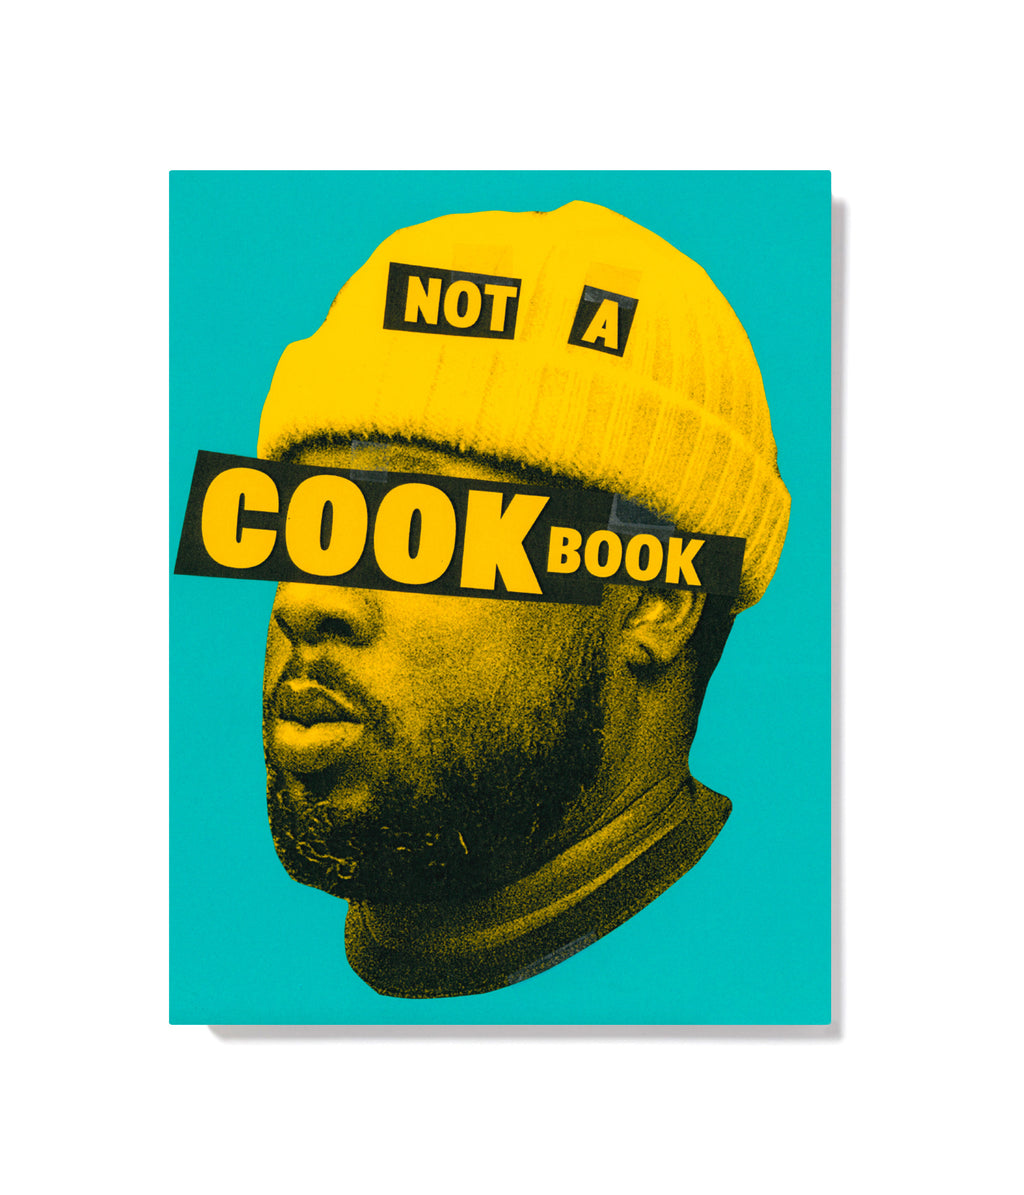 Not a Cookbook